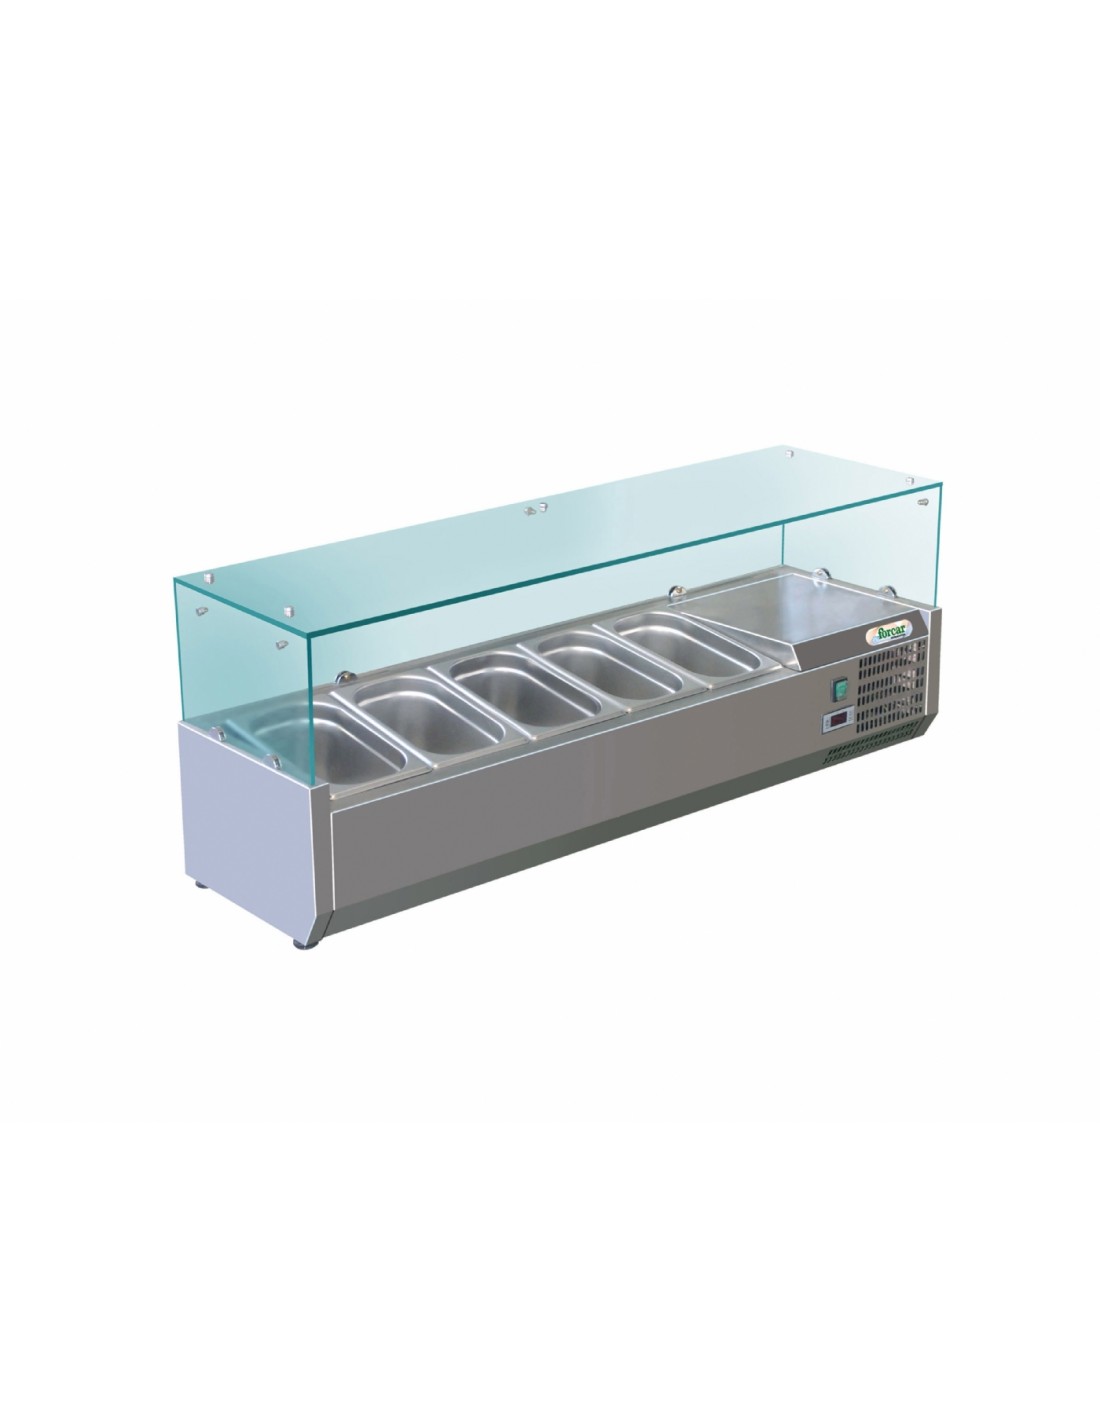 Vitrina refrigerada estante para ingredientes - Estático - Capacidad 4 bandejas GN 1/3 + 1 GN 1/2 - cm 140 x 38 x 44,5h